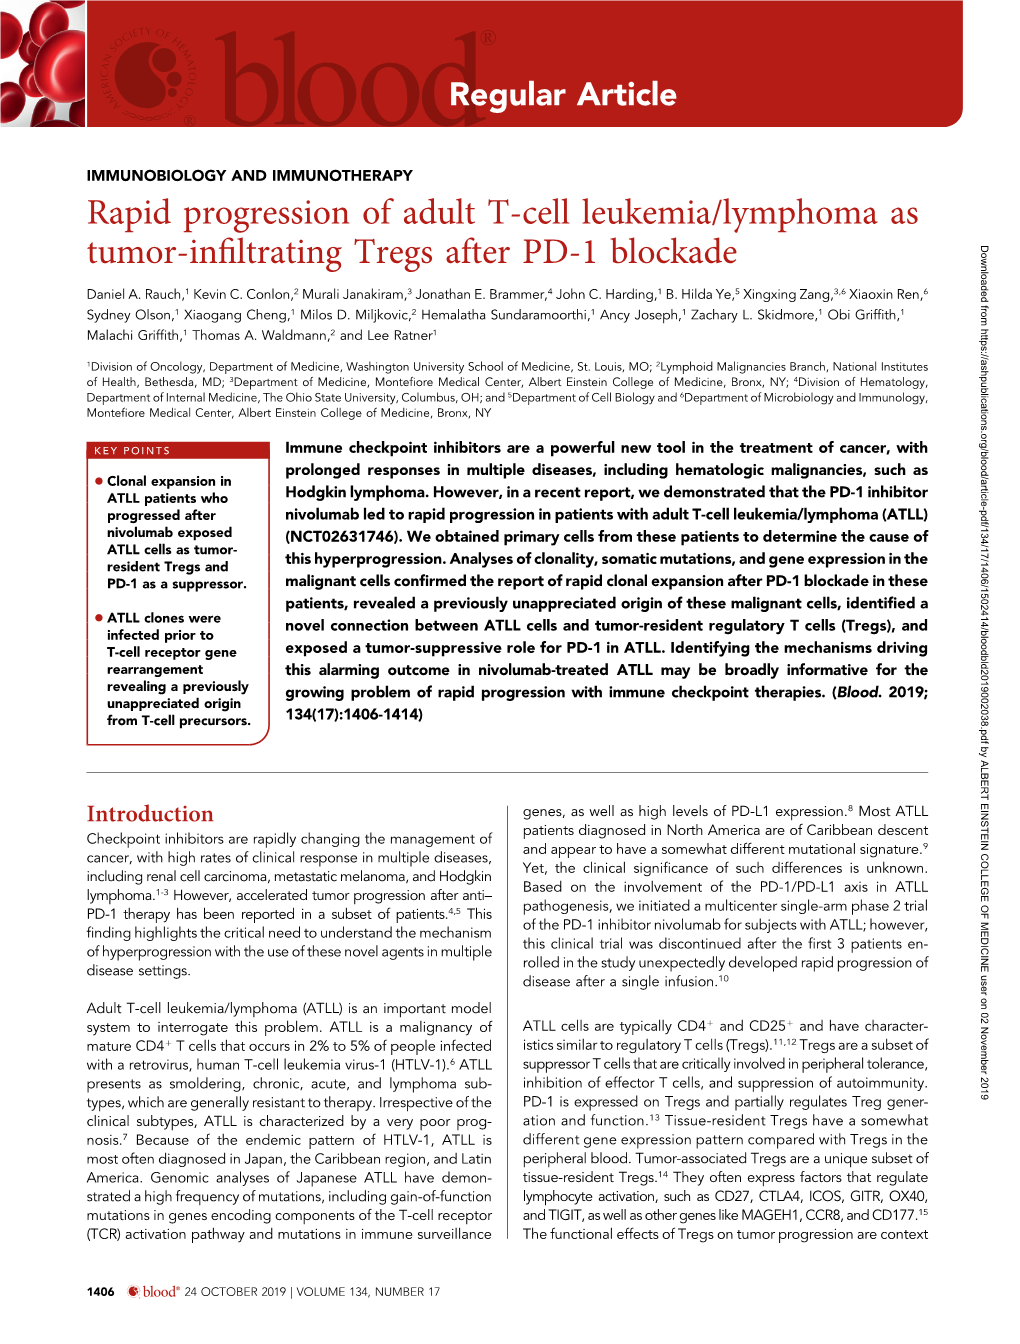 Rapid Progression of Adult T-Cell Leukemia/Lymphoma As Tumor